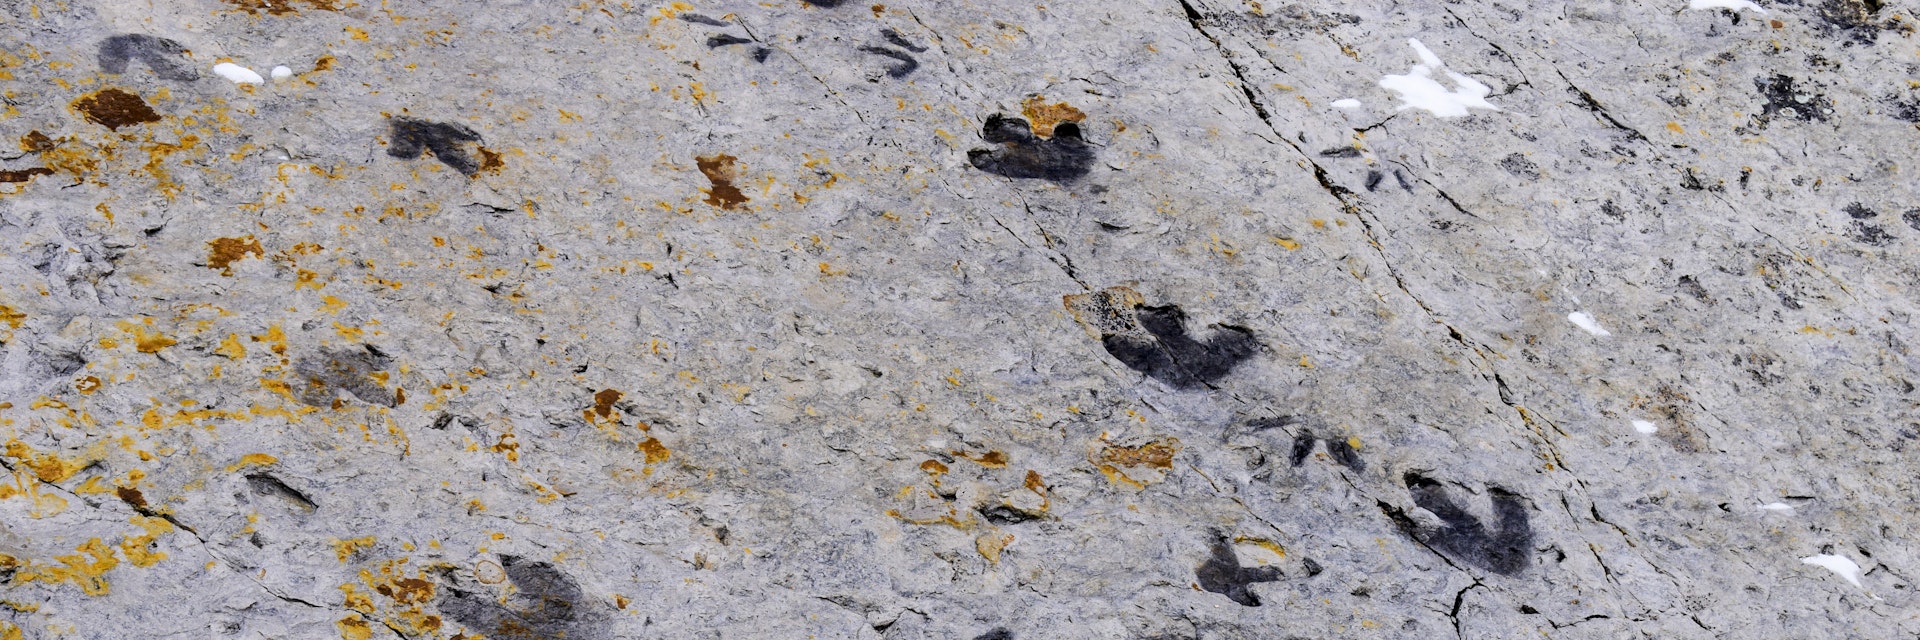 Fossilised dinosaur footprints, Dinosaur Ridge, Colorado.